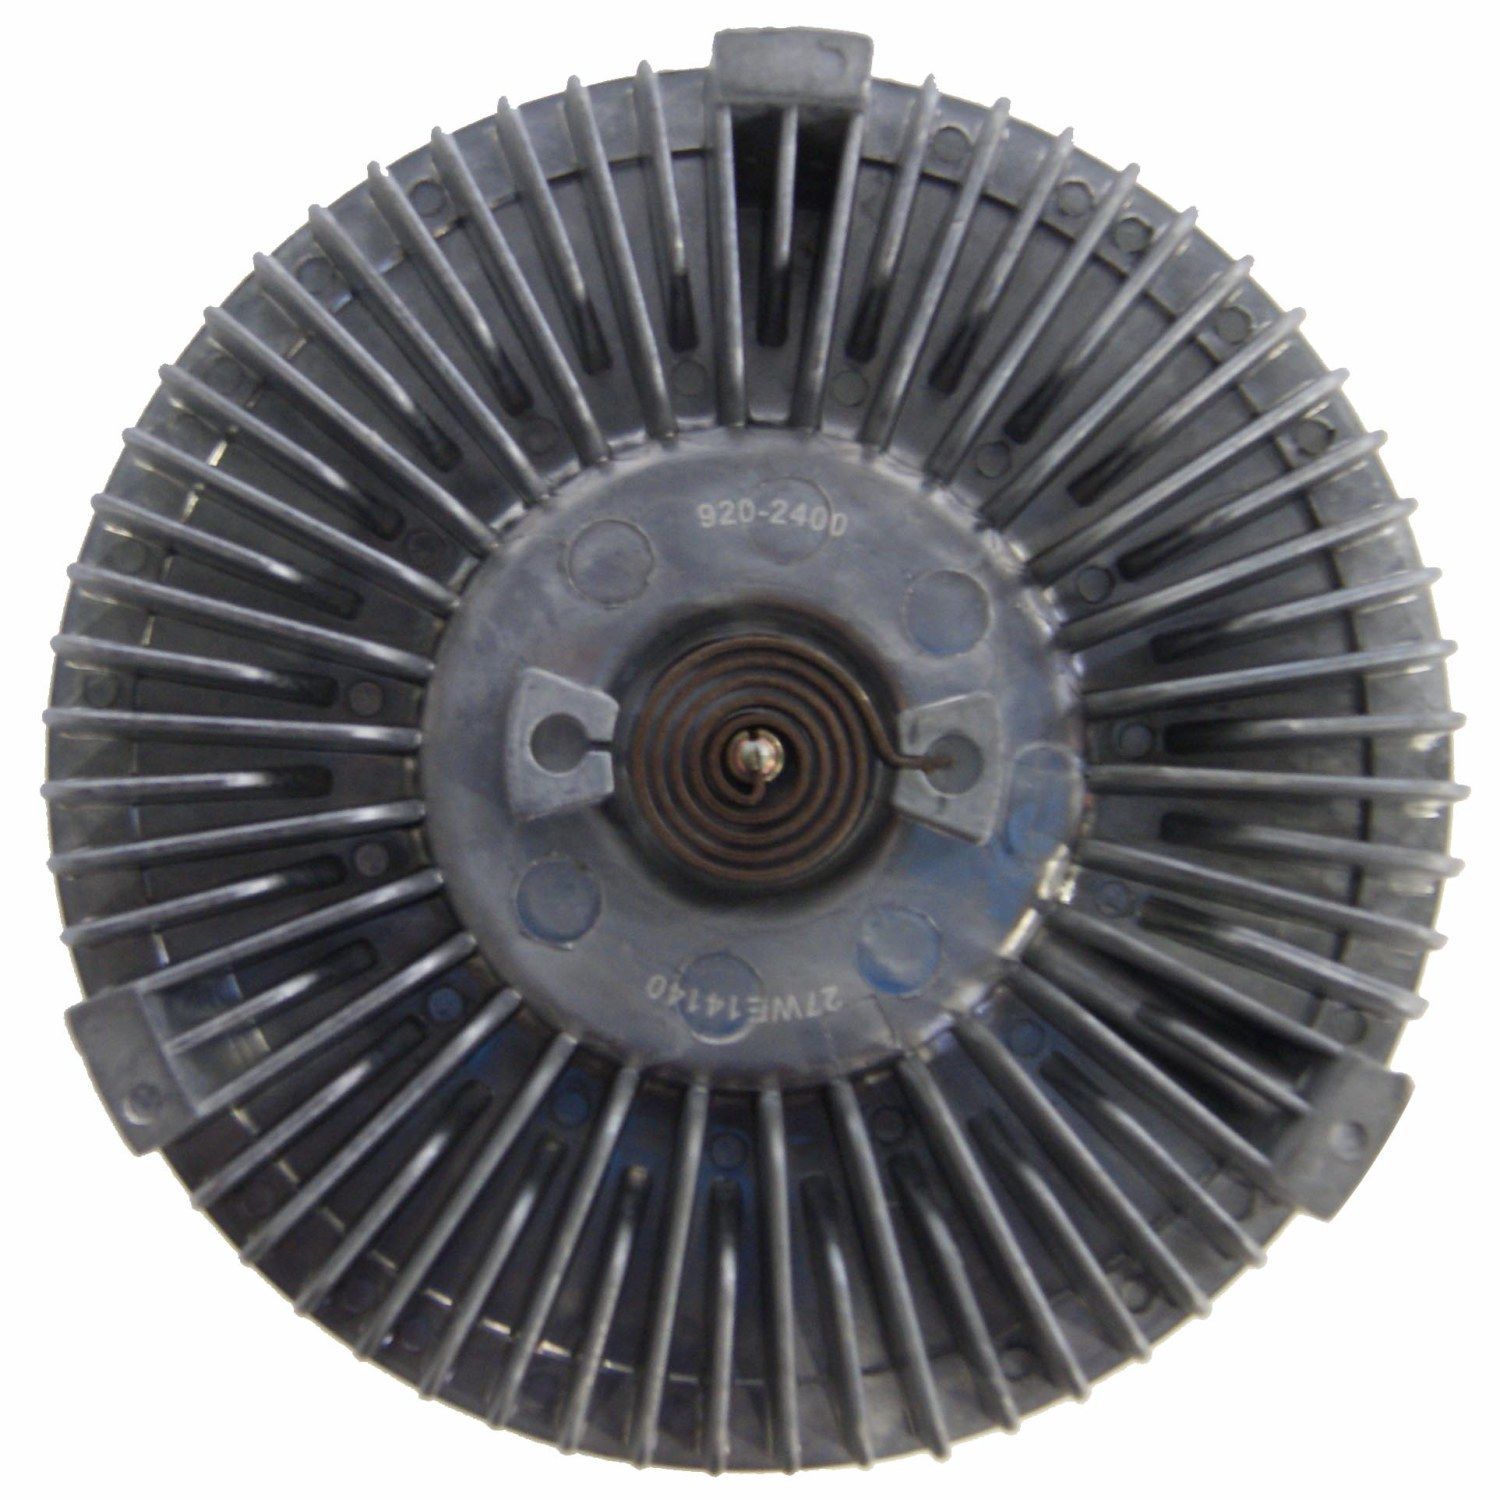 GMB - Engine Cooling Fan Clutch - GMB 920-2400